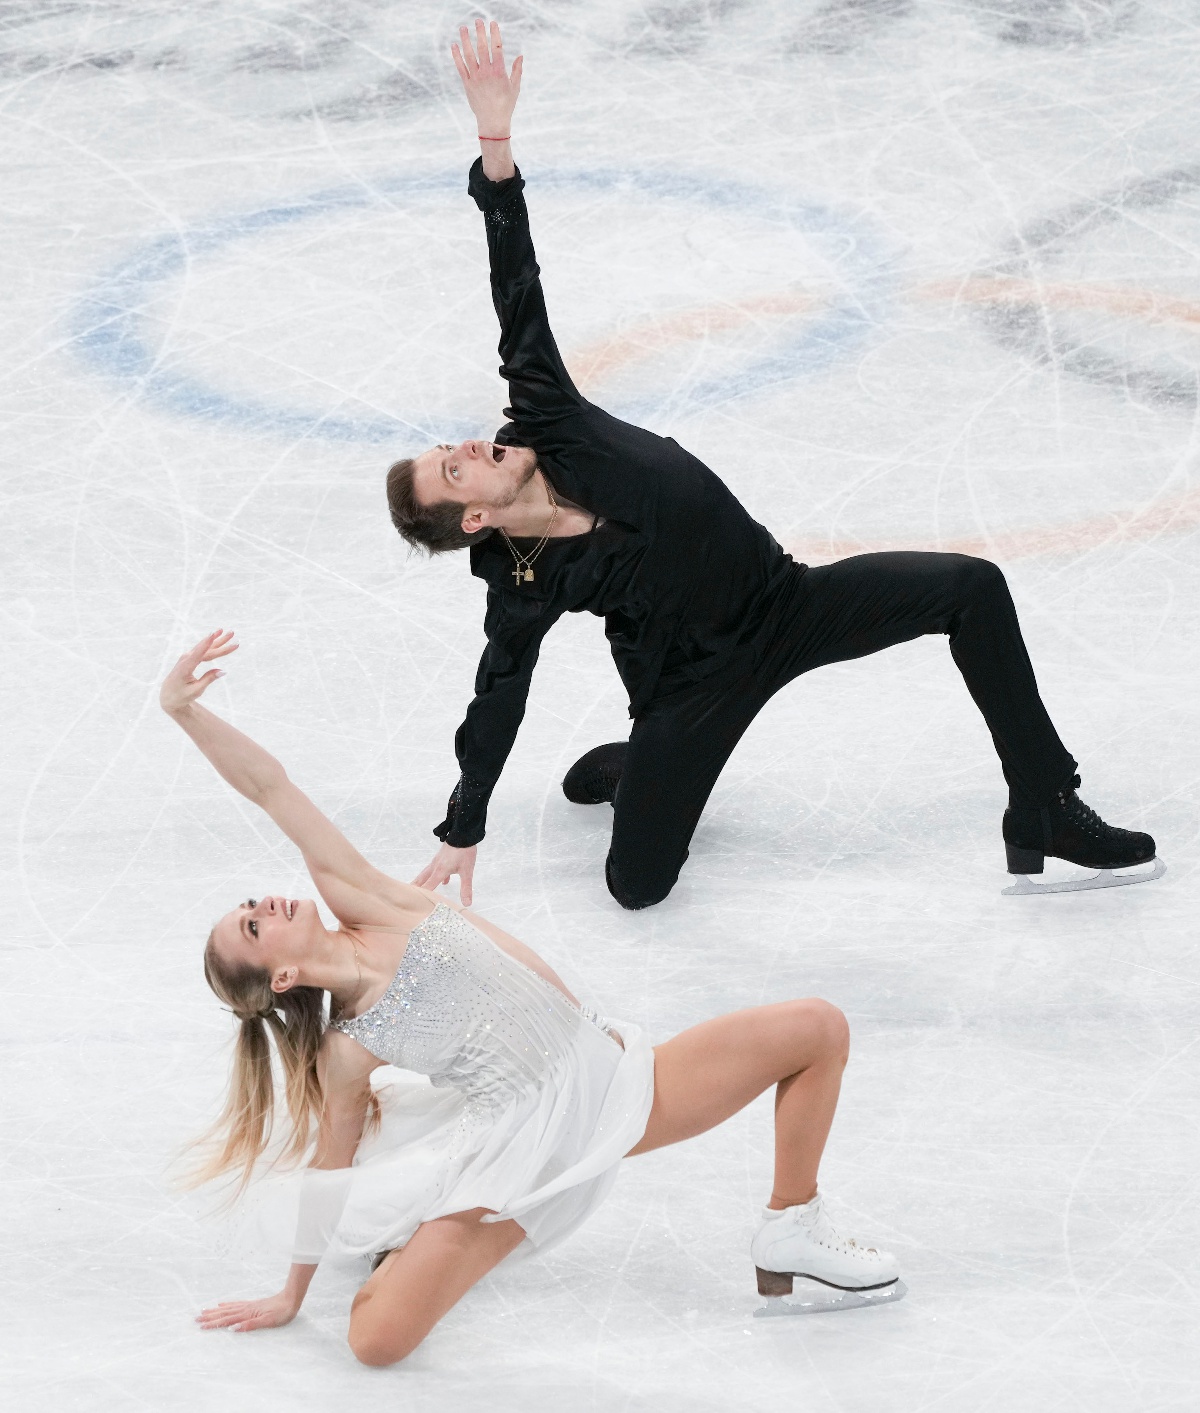 (北京冬奥会)花样滑冰——冰上舞蹈自由舞比赛赛况(30)